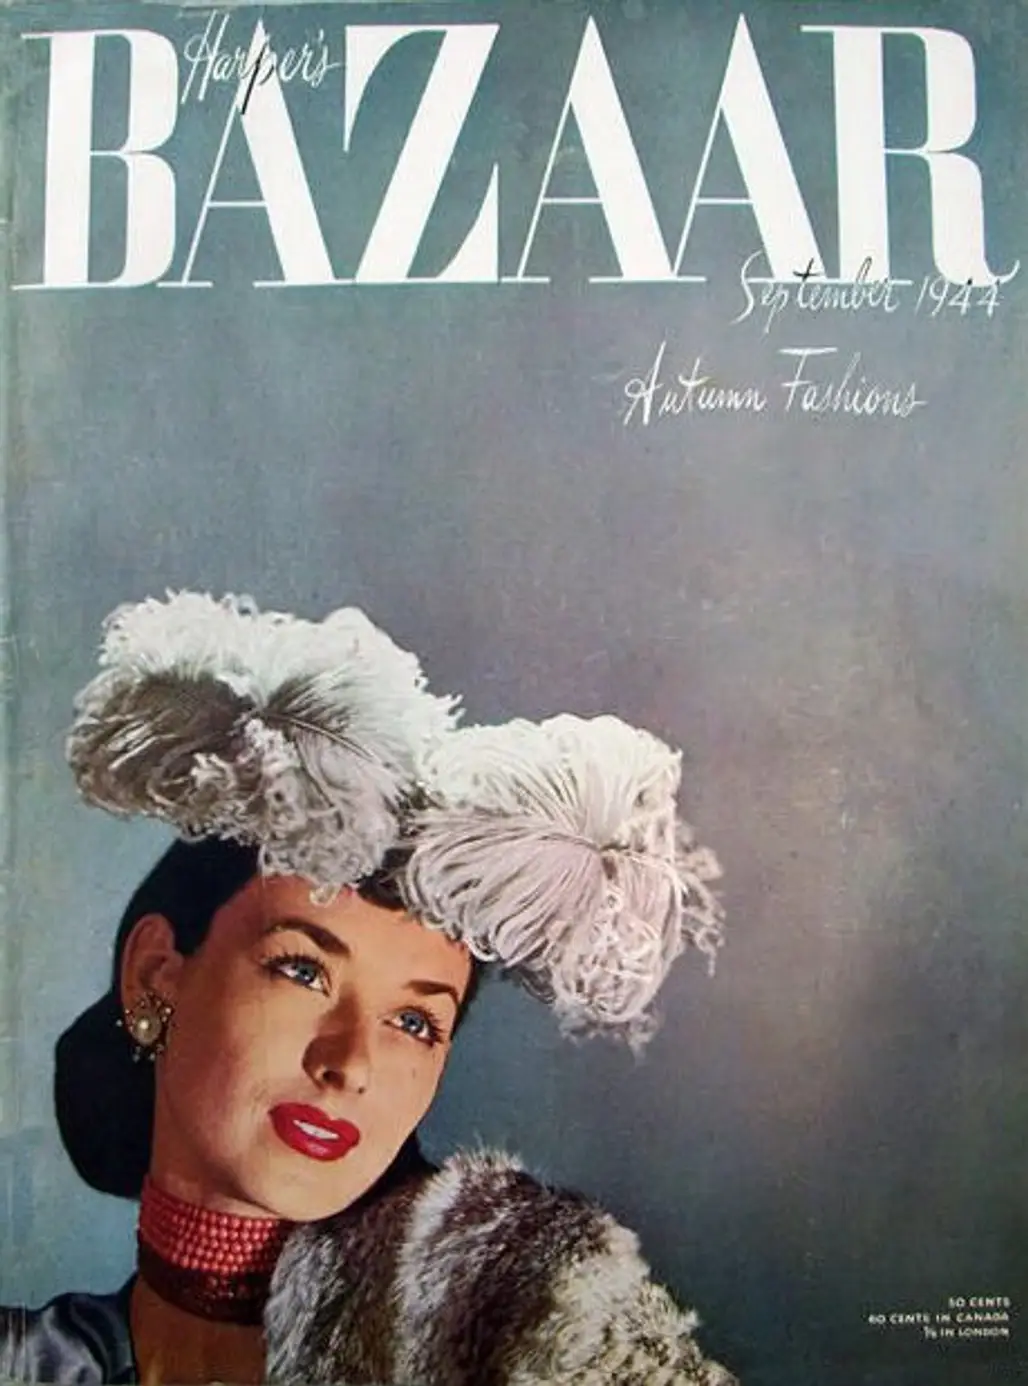 Harper's Bazaar, Sept 1944